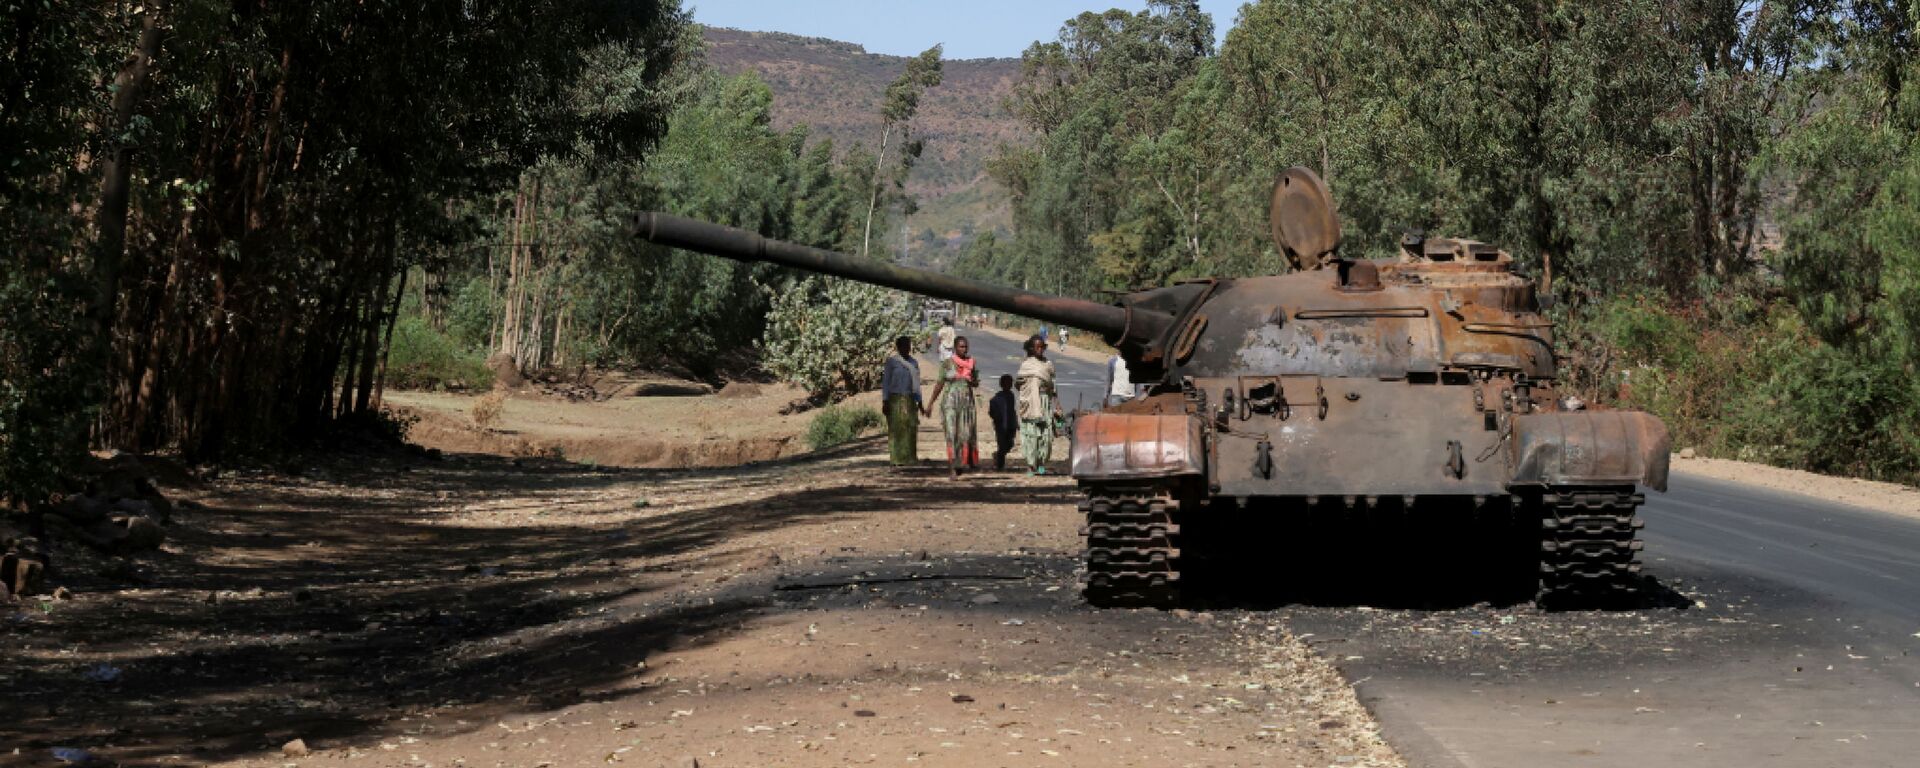 Tanque queimado perto da cidade de Adwa, região de Tigré, Etiópia, 18 de março de 2021 - Sputnik Brasil, 1920, 05.04.2021